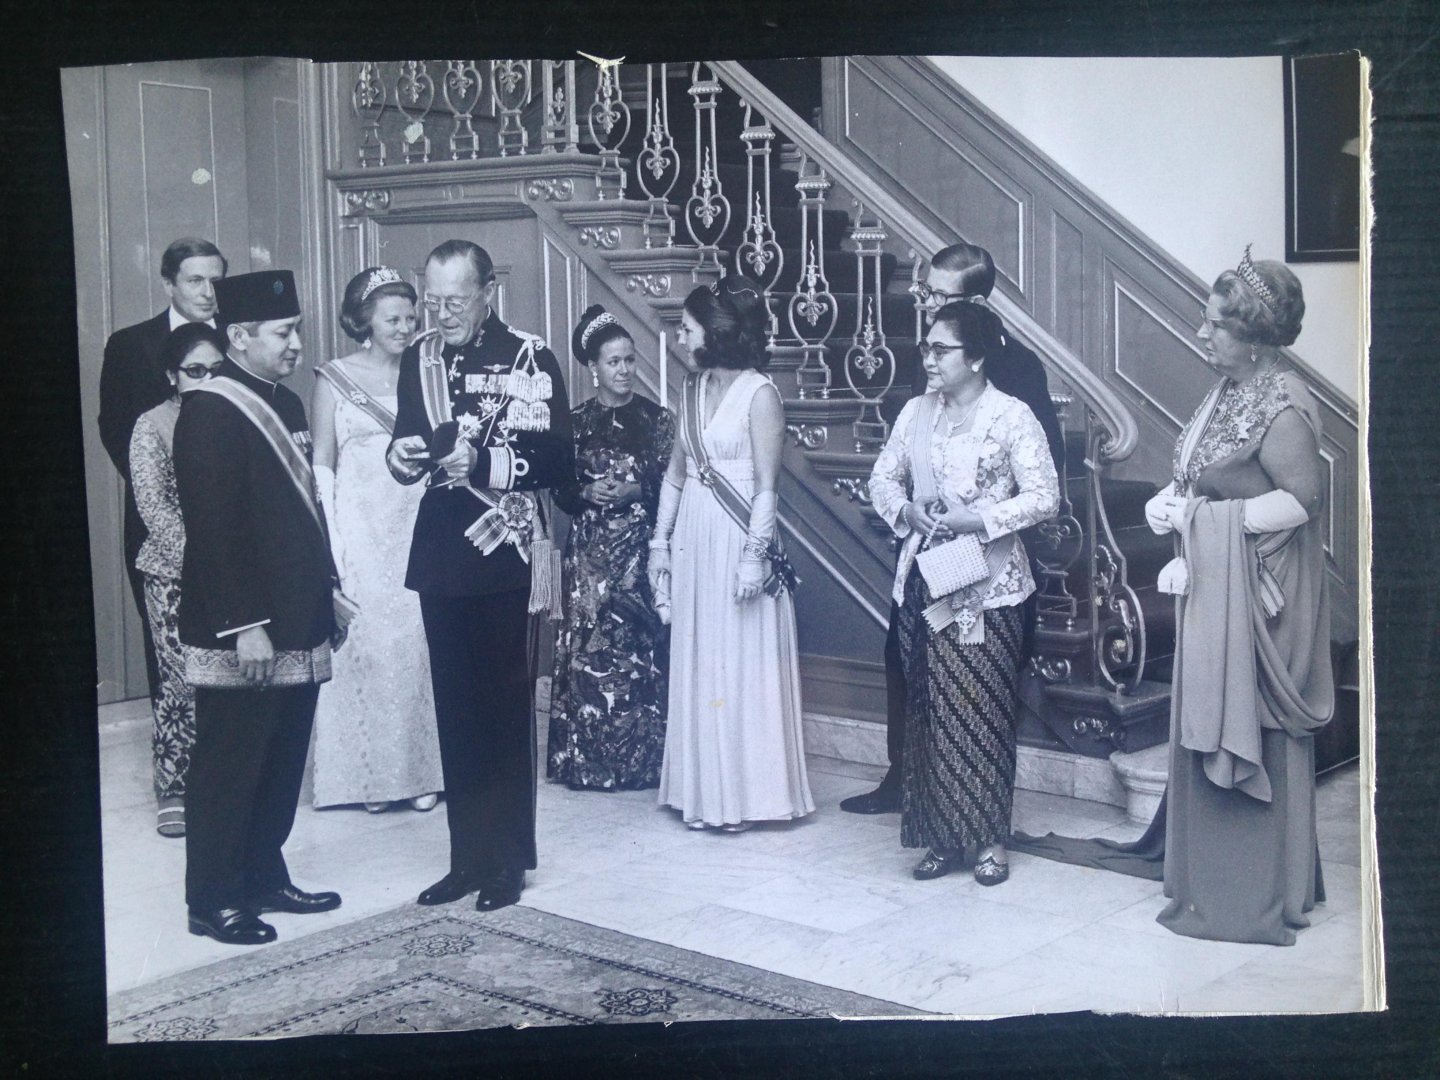  - Programma bezoek van Zijne Excellentie de President van de Republiek Indonesie aan HM de Koningin,1970